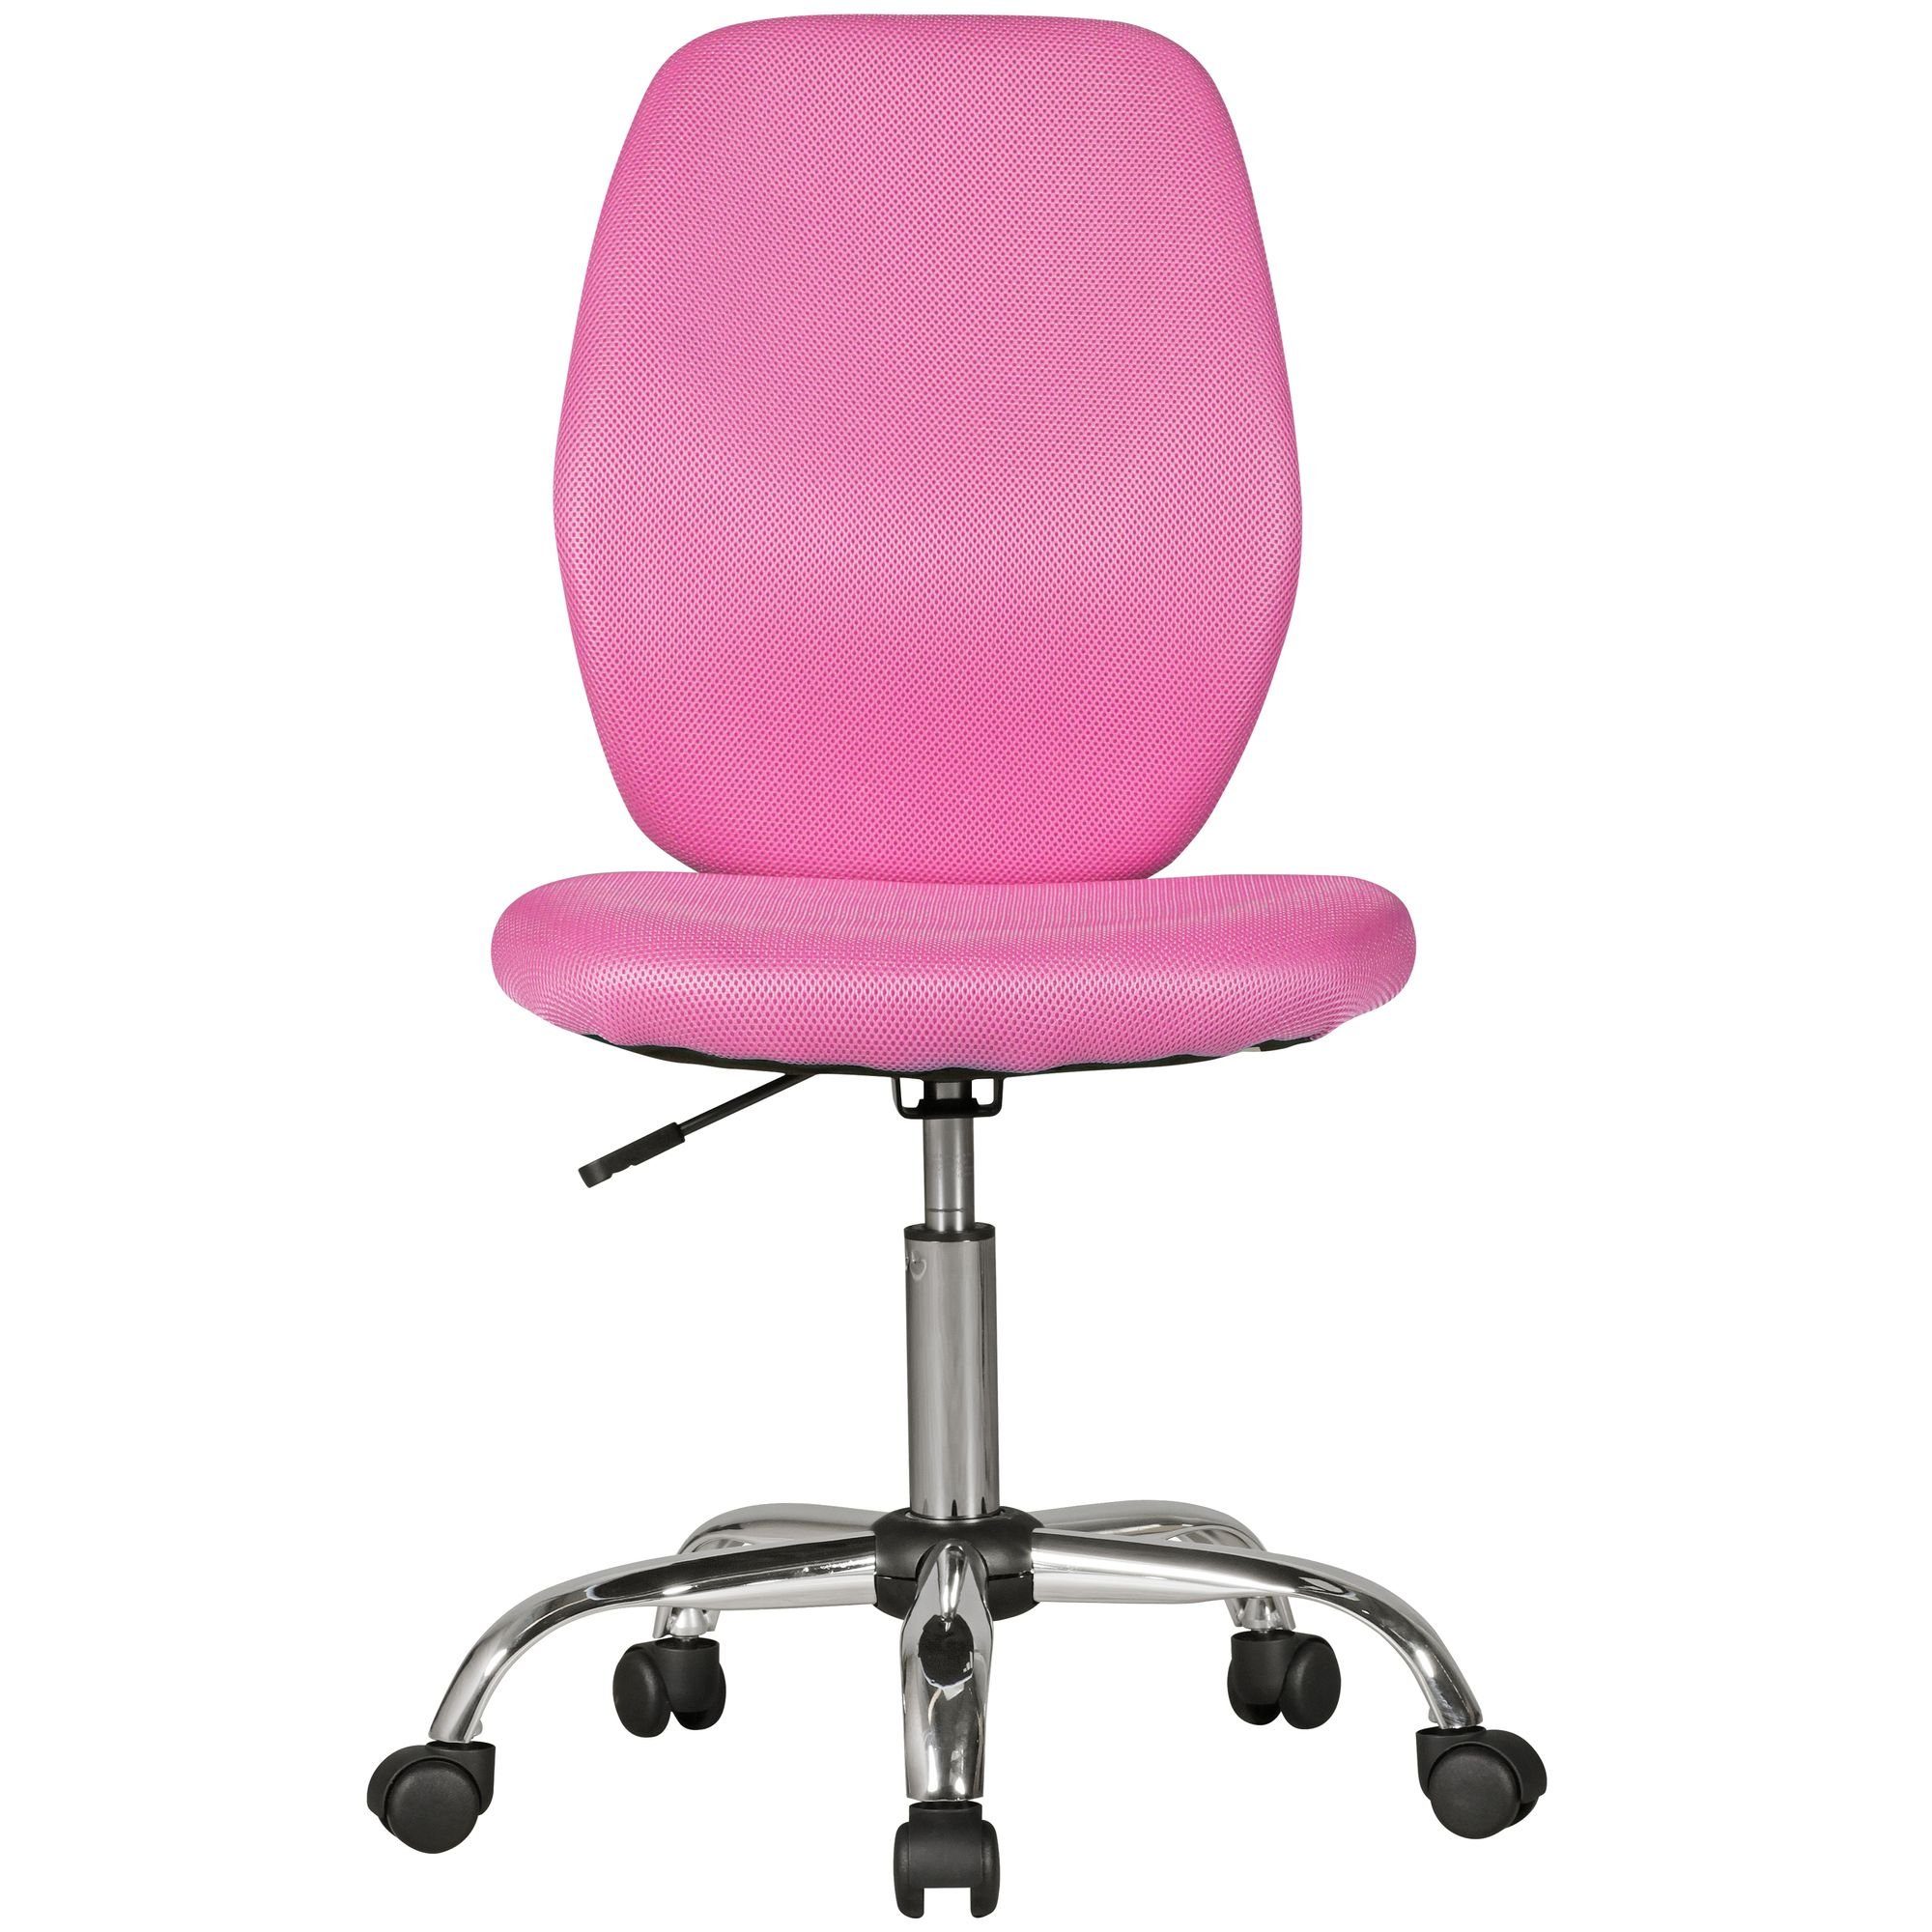 Amstyle Drehstuhl SPM1.393 (Kinderdrehstuhl Pink für Kinder ab 6 Jahren), Kinderschreibtischstuhl ohne Armlehne, Jugendstuhl